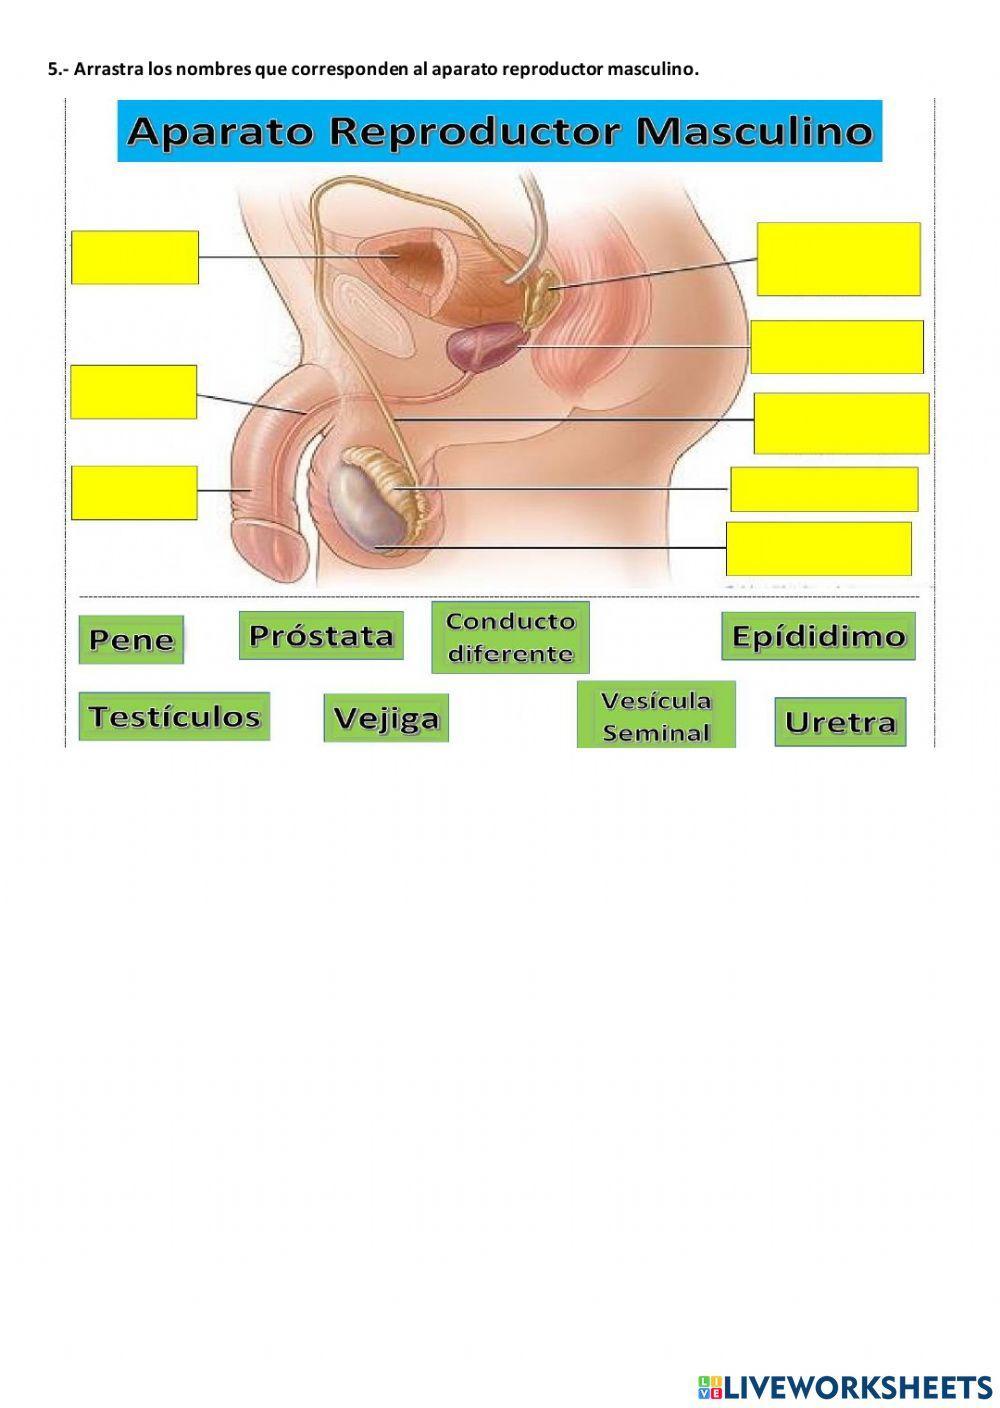 Ciclo menstrual y aparatos reproductores